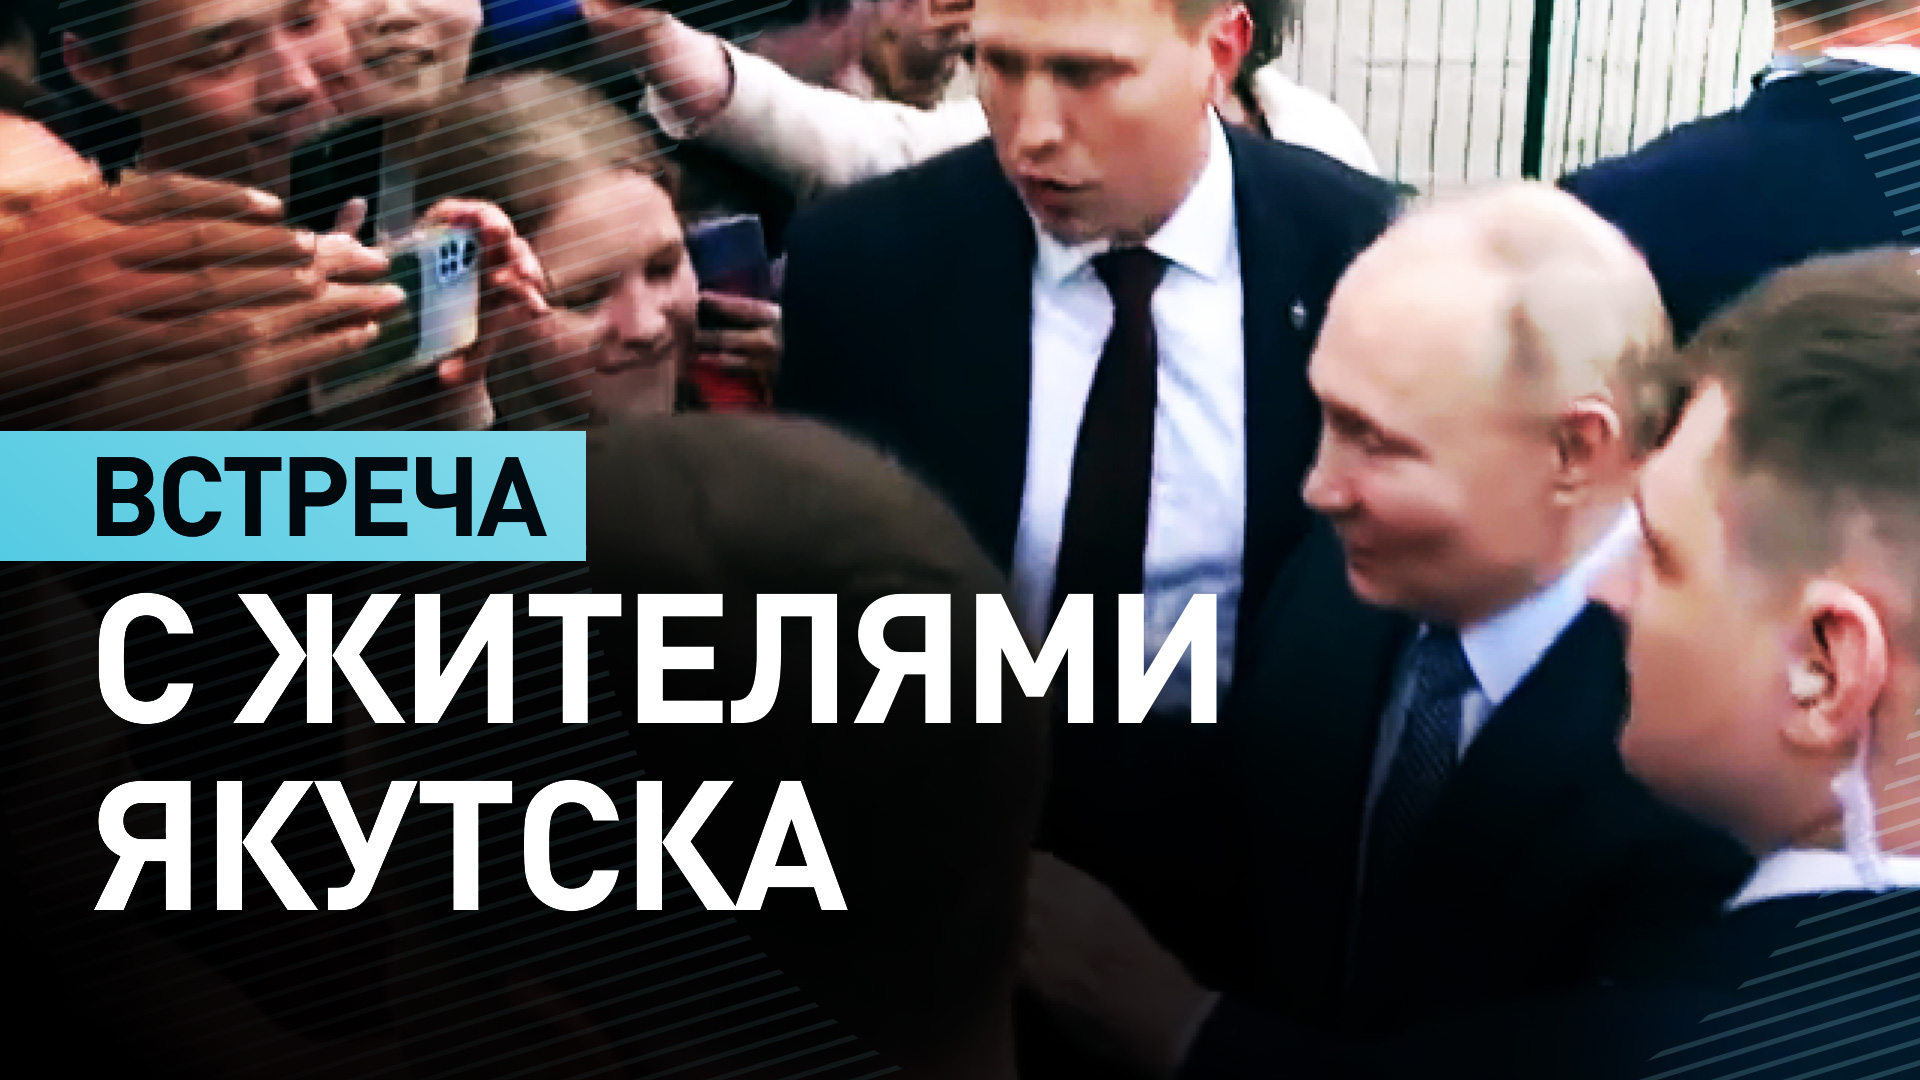 Путин пообщался с жителями Якутска в ходе рабочей поездки — видео